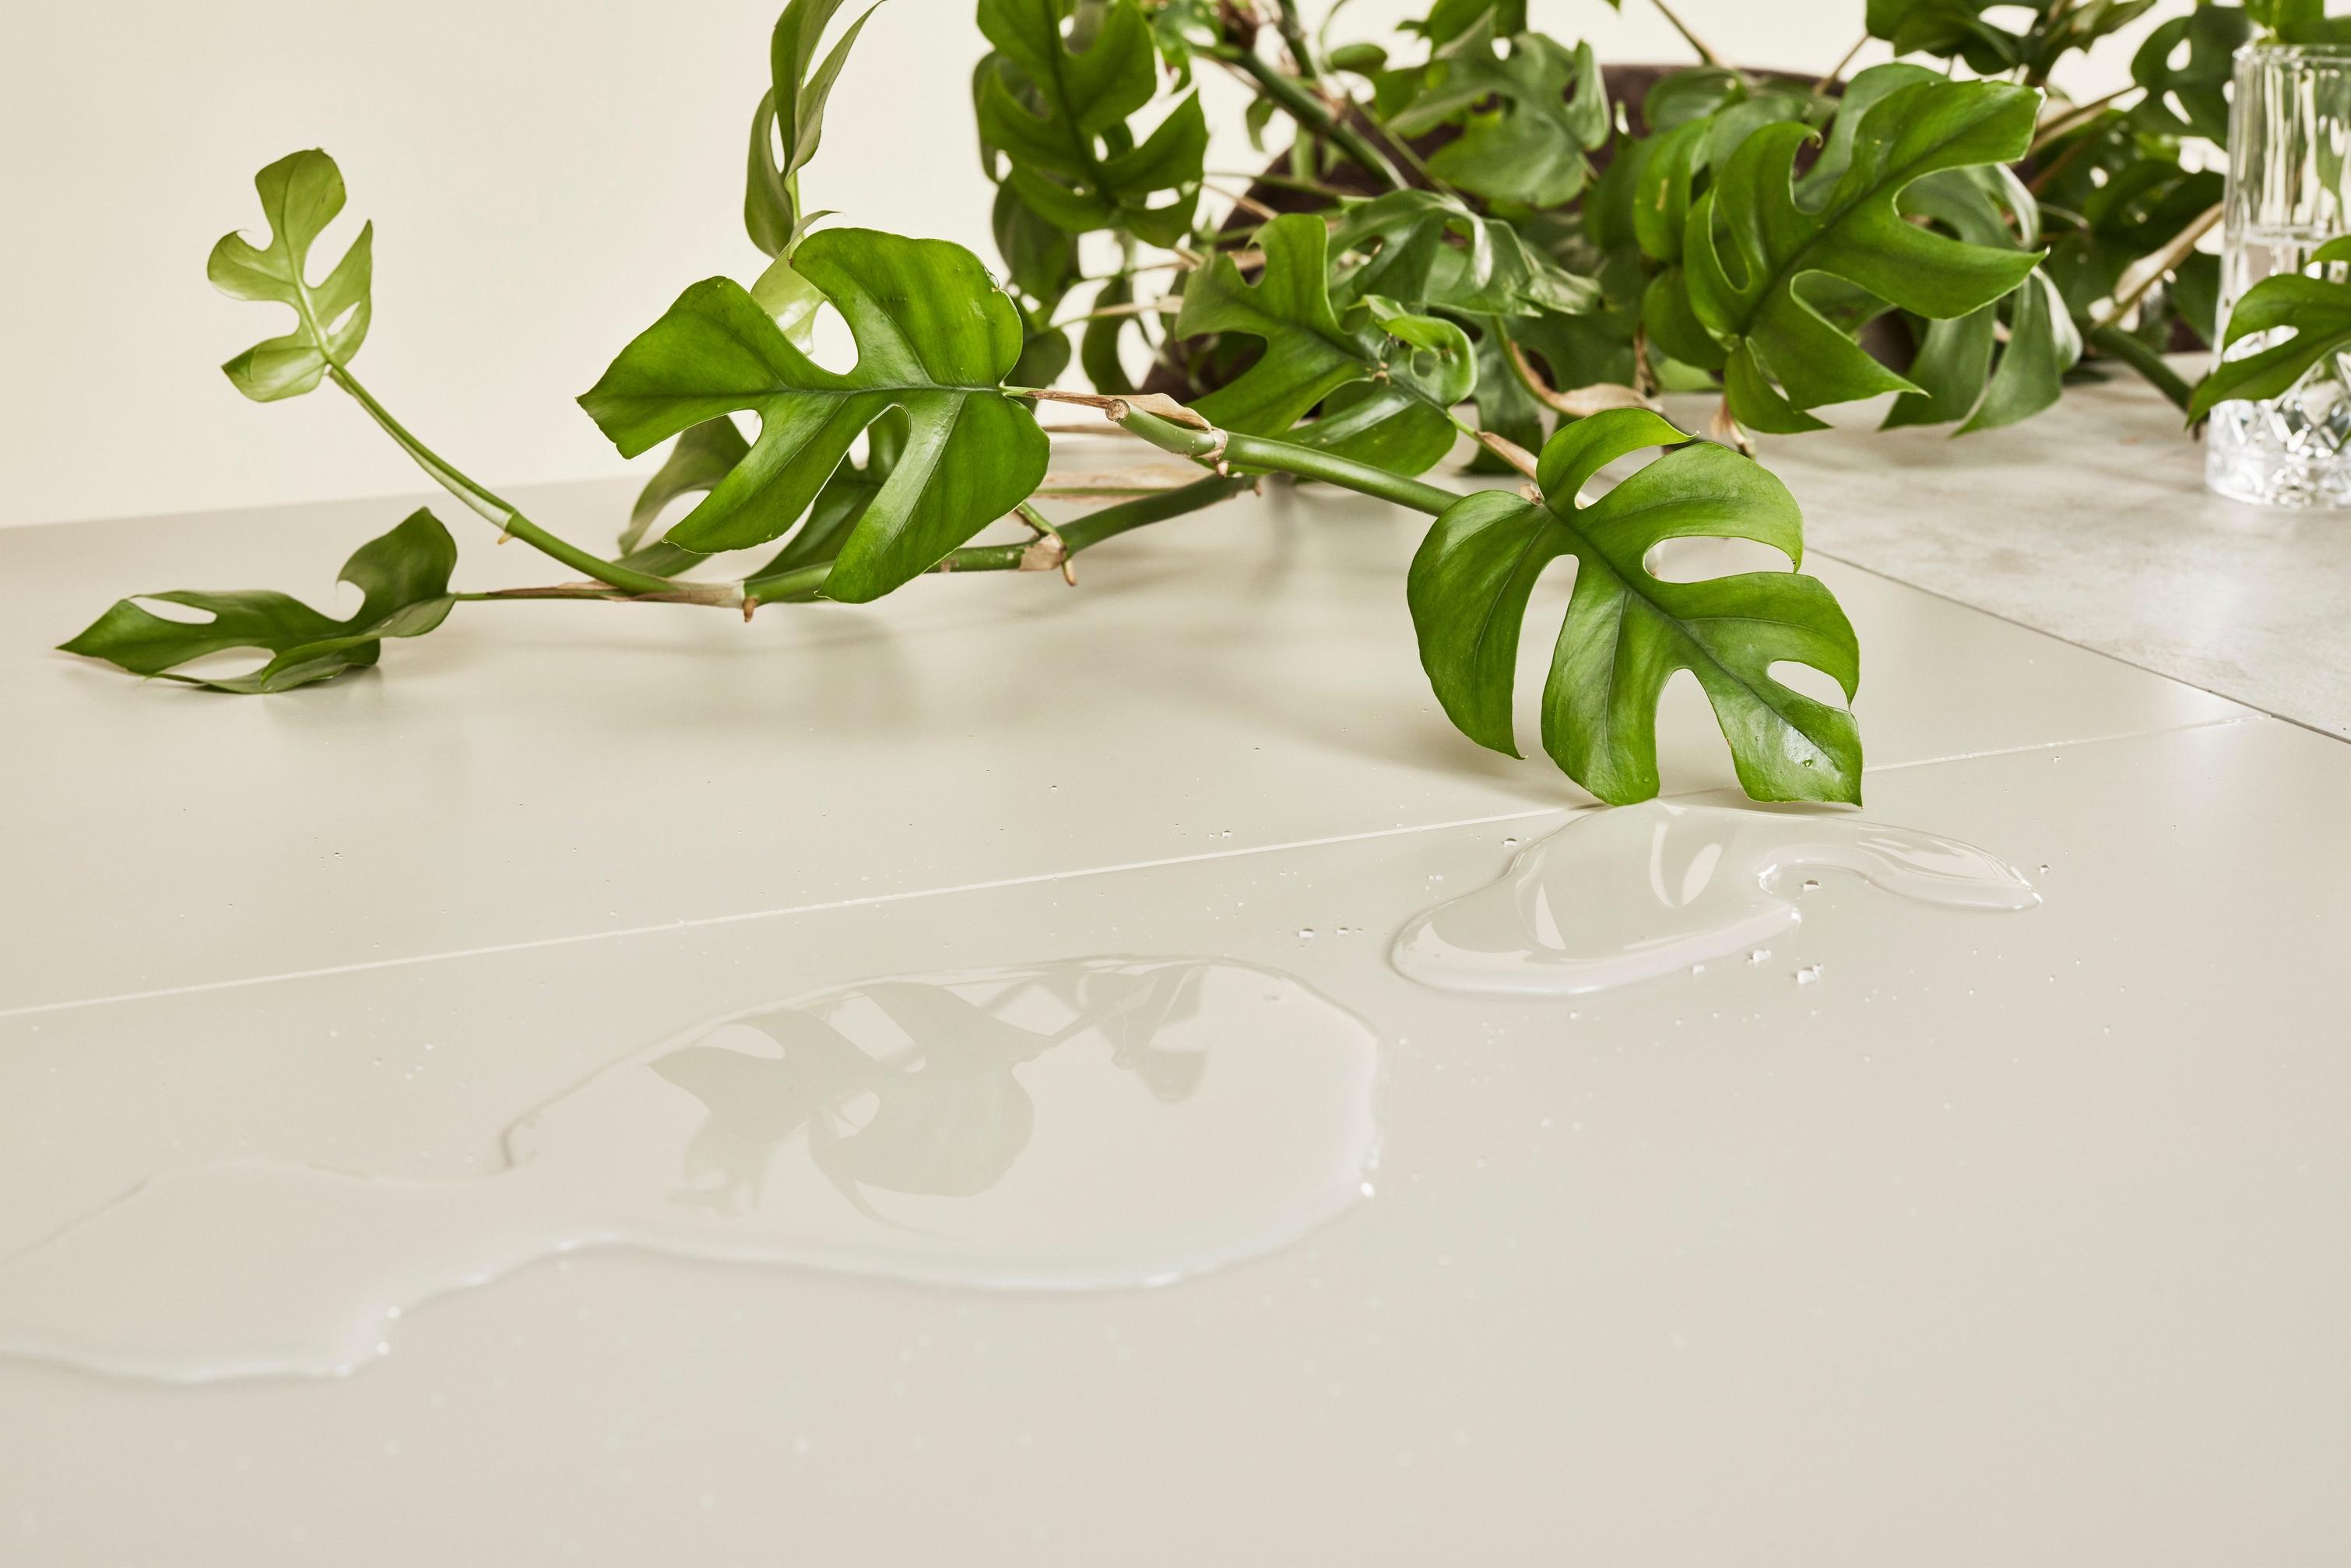 Зеленая монстера на столе лакированной поверхностью с прозрачными брызгами воды, в которых отражаются листья.